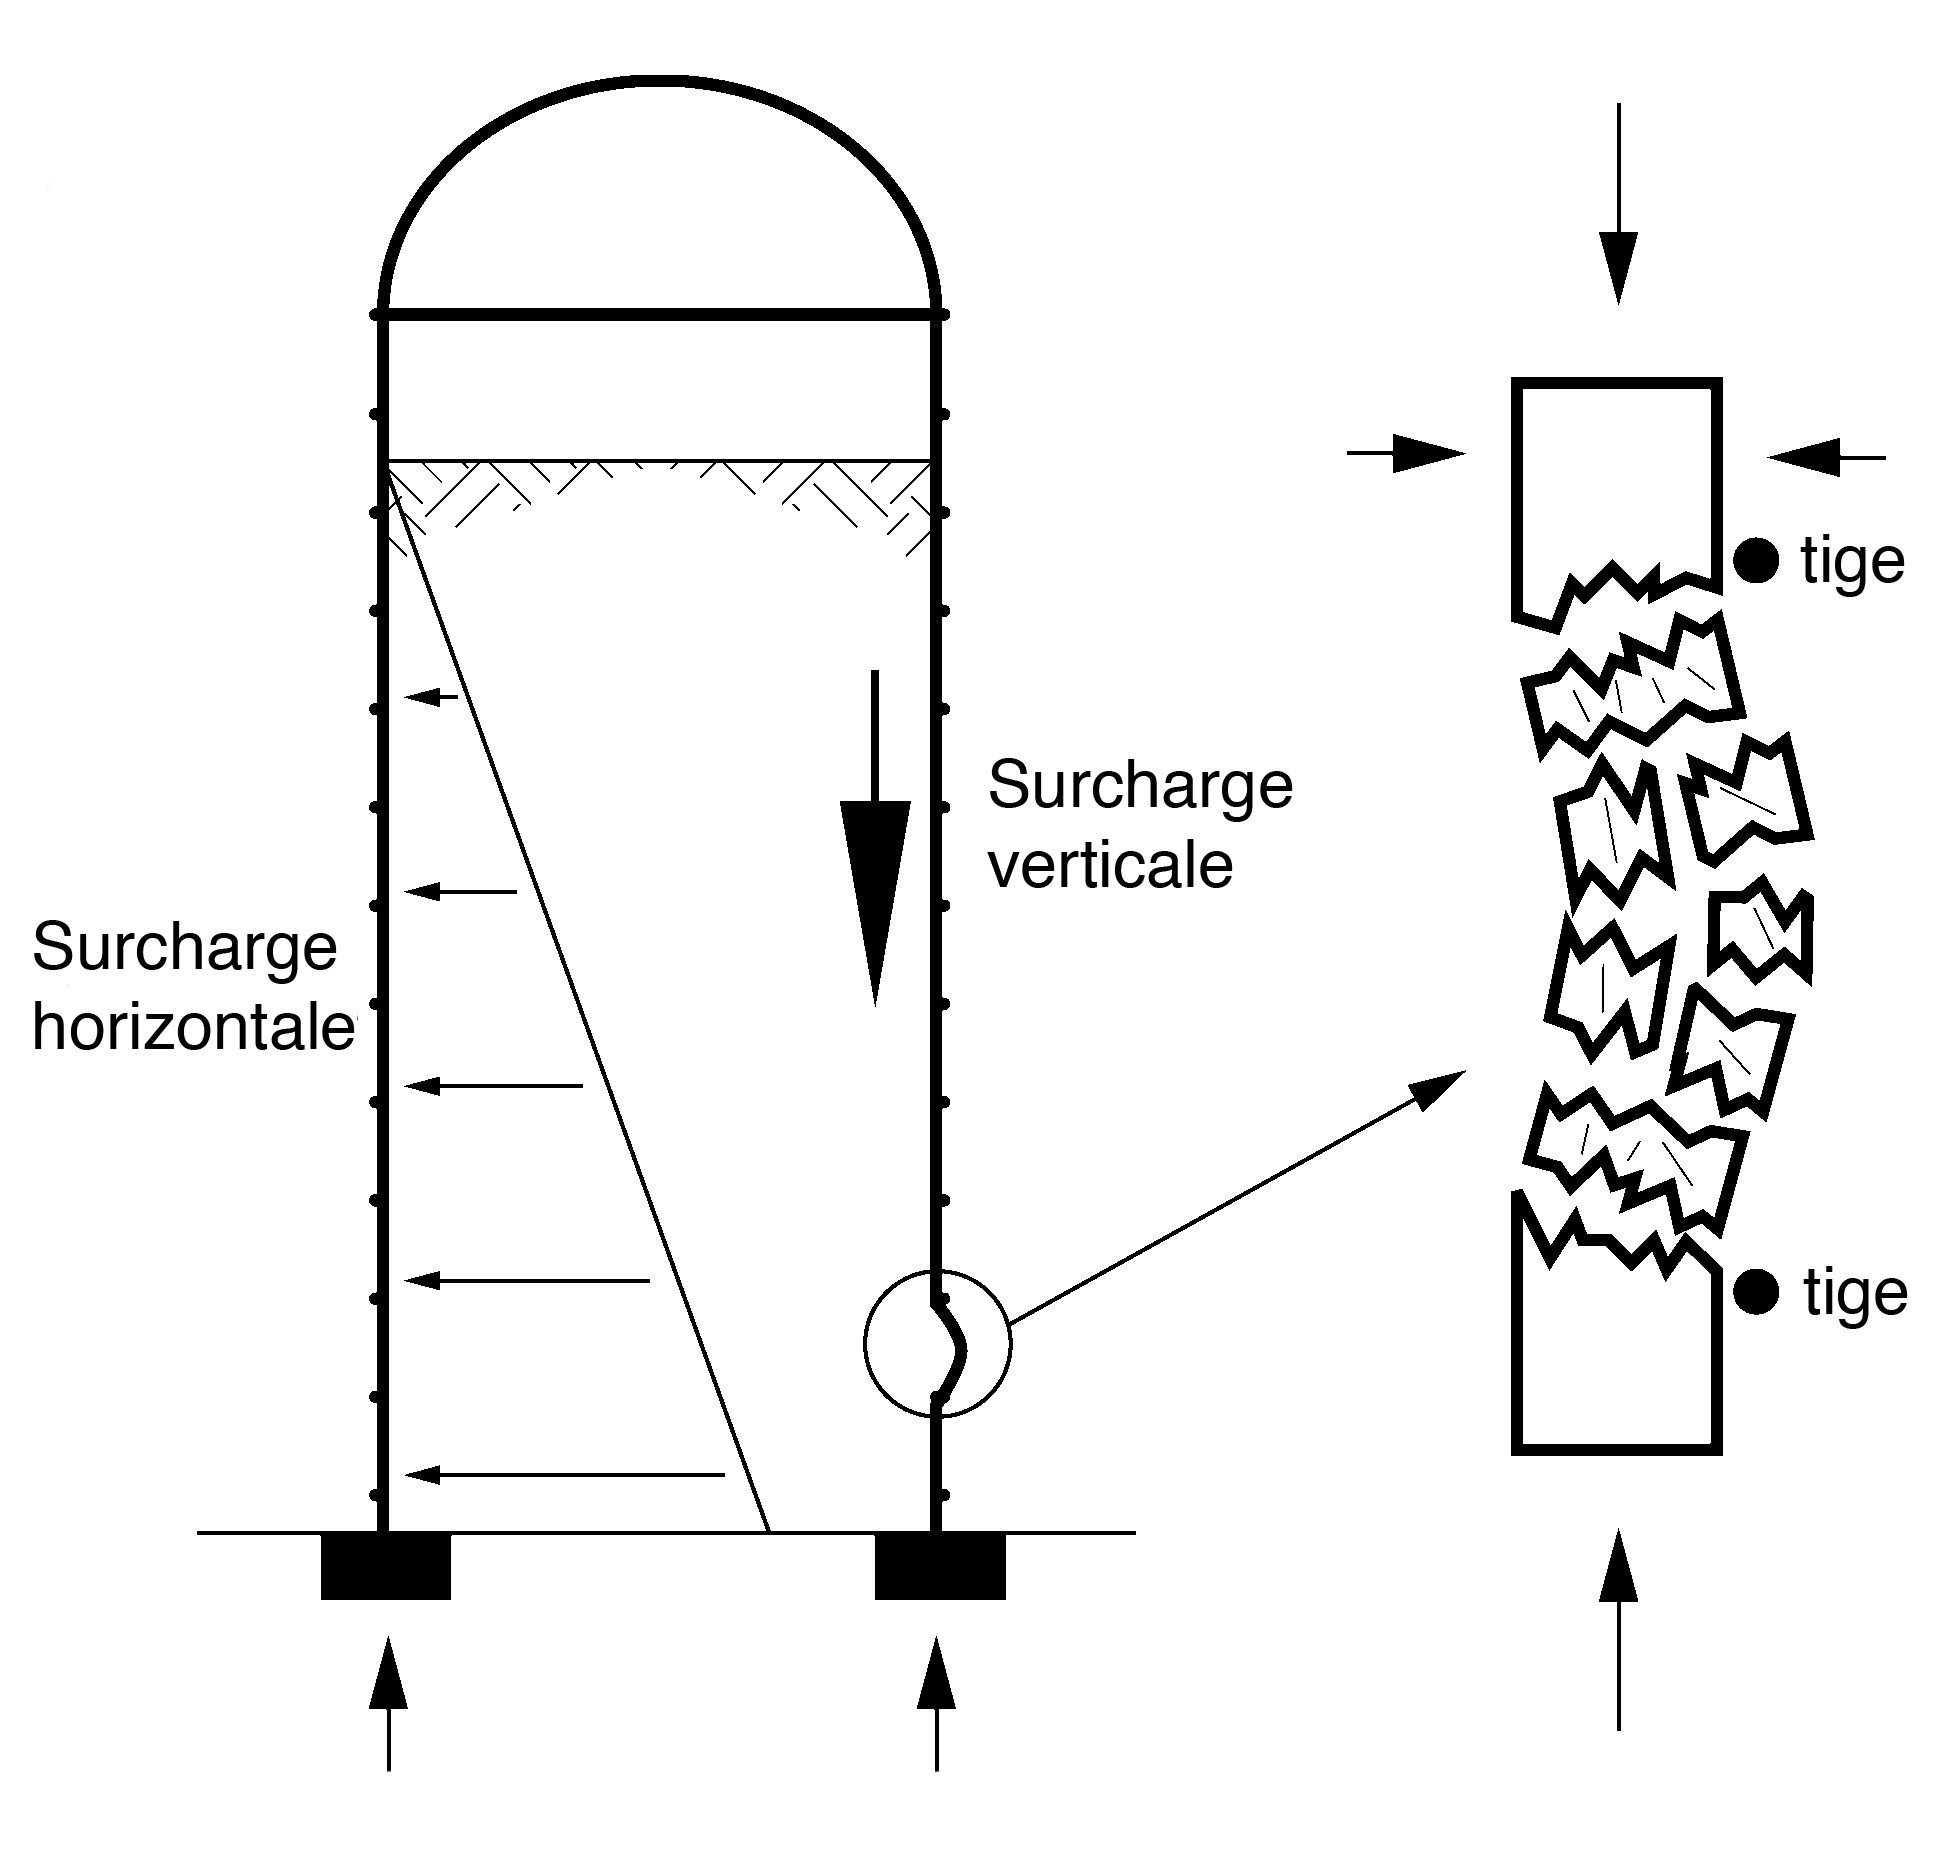 Croquis expliquant comment les parois de béton d’un silo peuvent être affaiblies par les acides d’ensilage. Après des années d’utilisation, ce type de détérioration peut mener à une défaillance structurale.